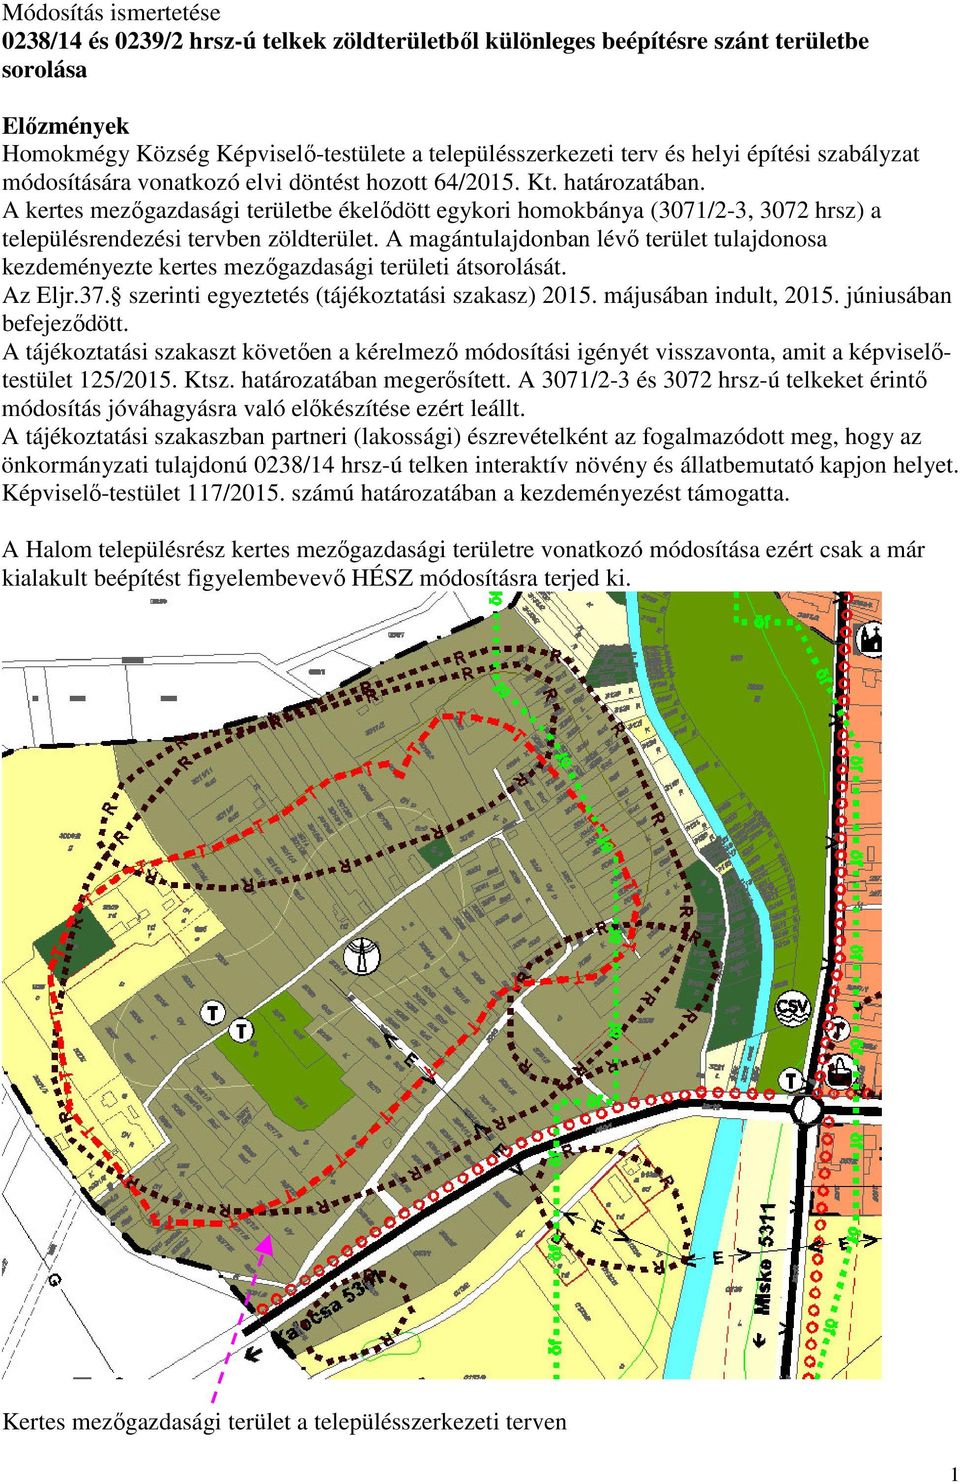 A kertes mezőgazdasági területbe ékelődött egykori homokbánya (3071/2-3, 3072 hrsz) a településrendezési tervben zöldterület.